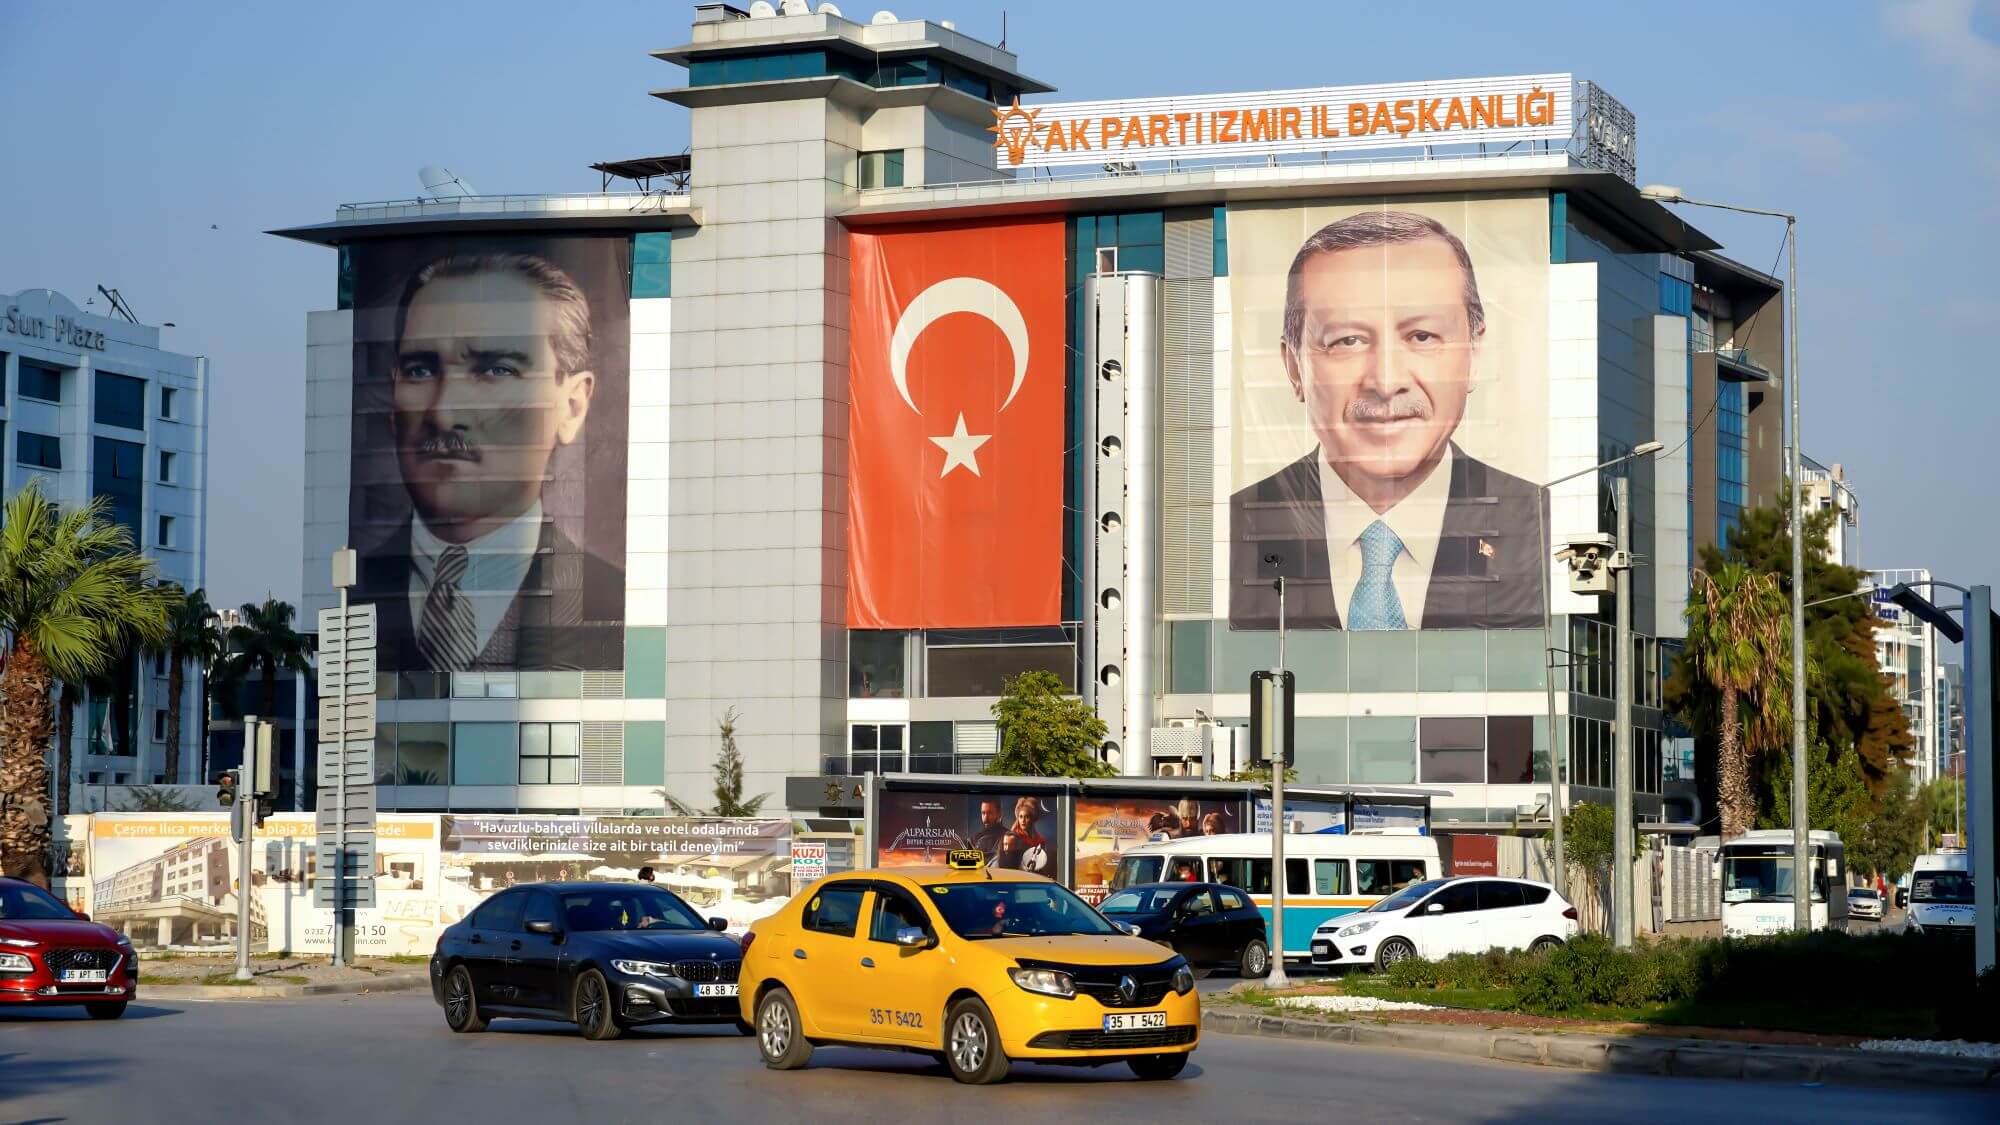 Vreeken - Kantoor van de AK-partij in de Turkse stad Izmir met de afbeelding van Ataturk en Erdogan in 2021. Reuters